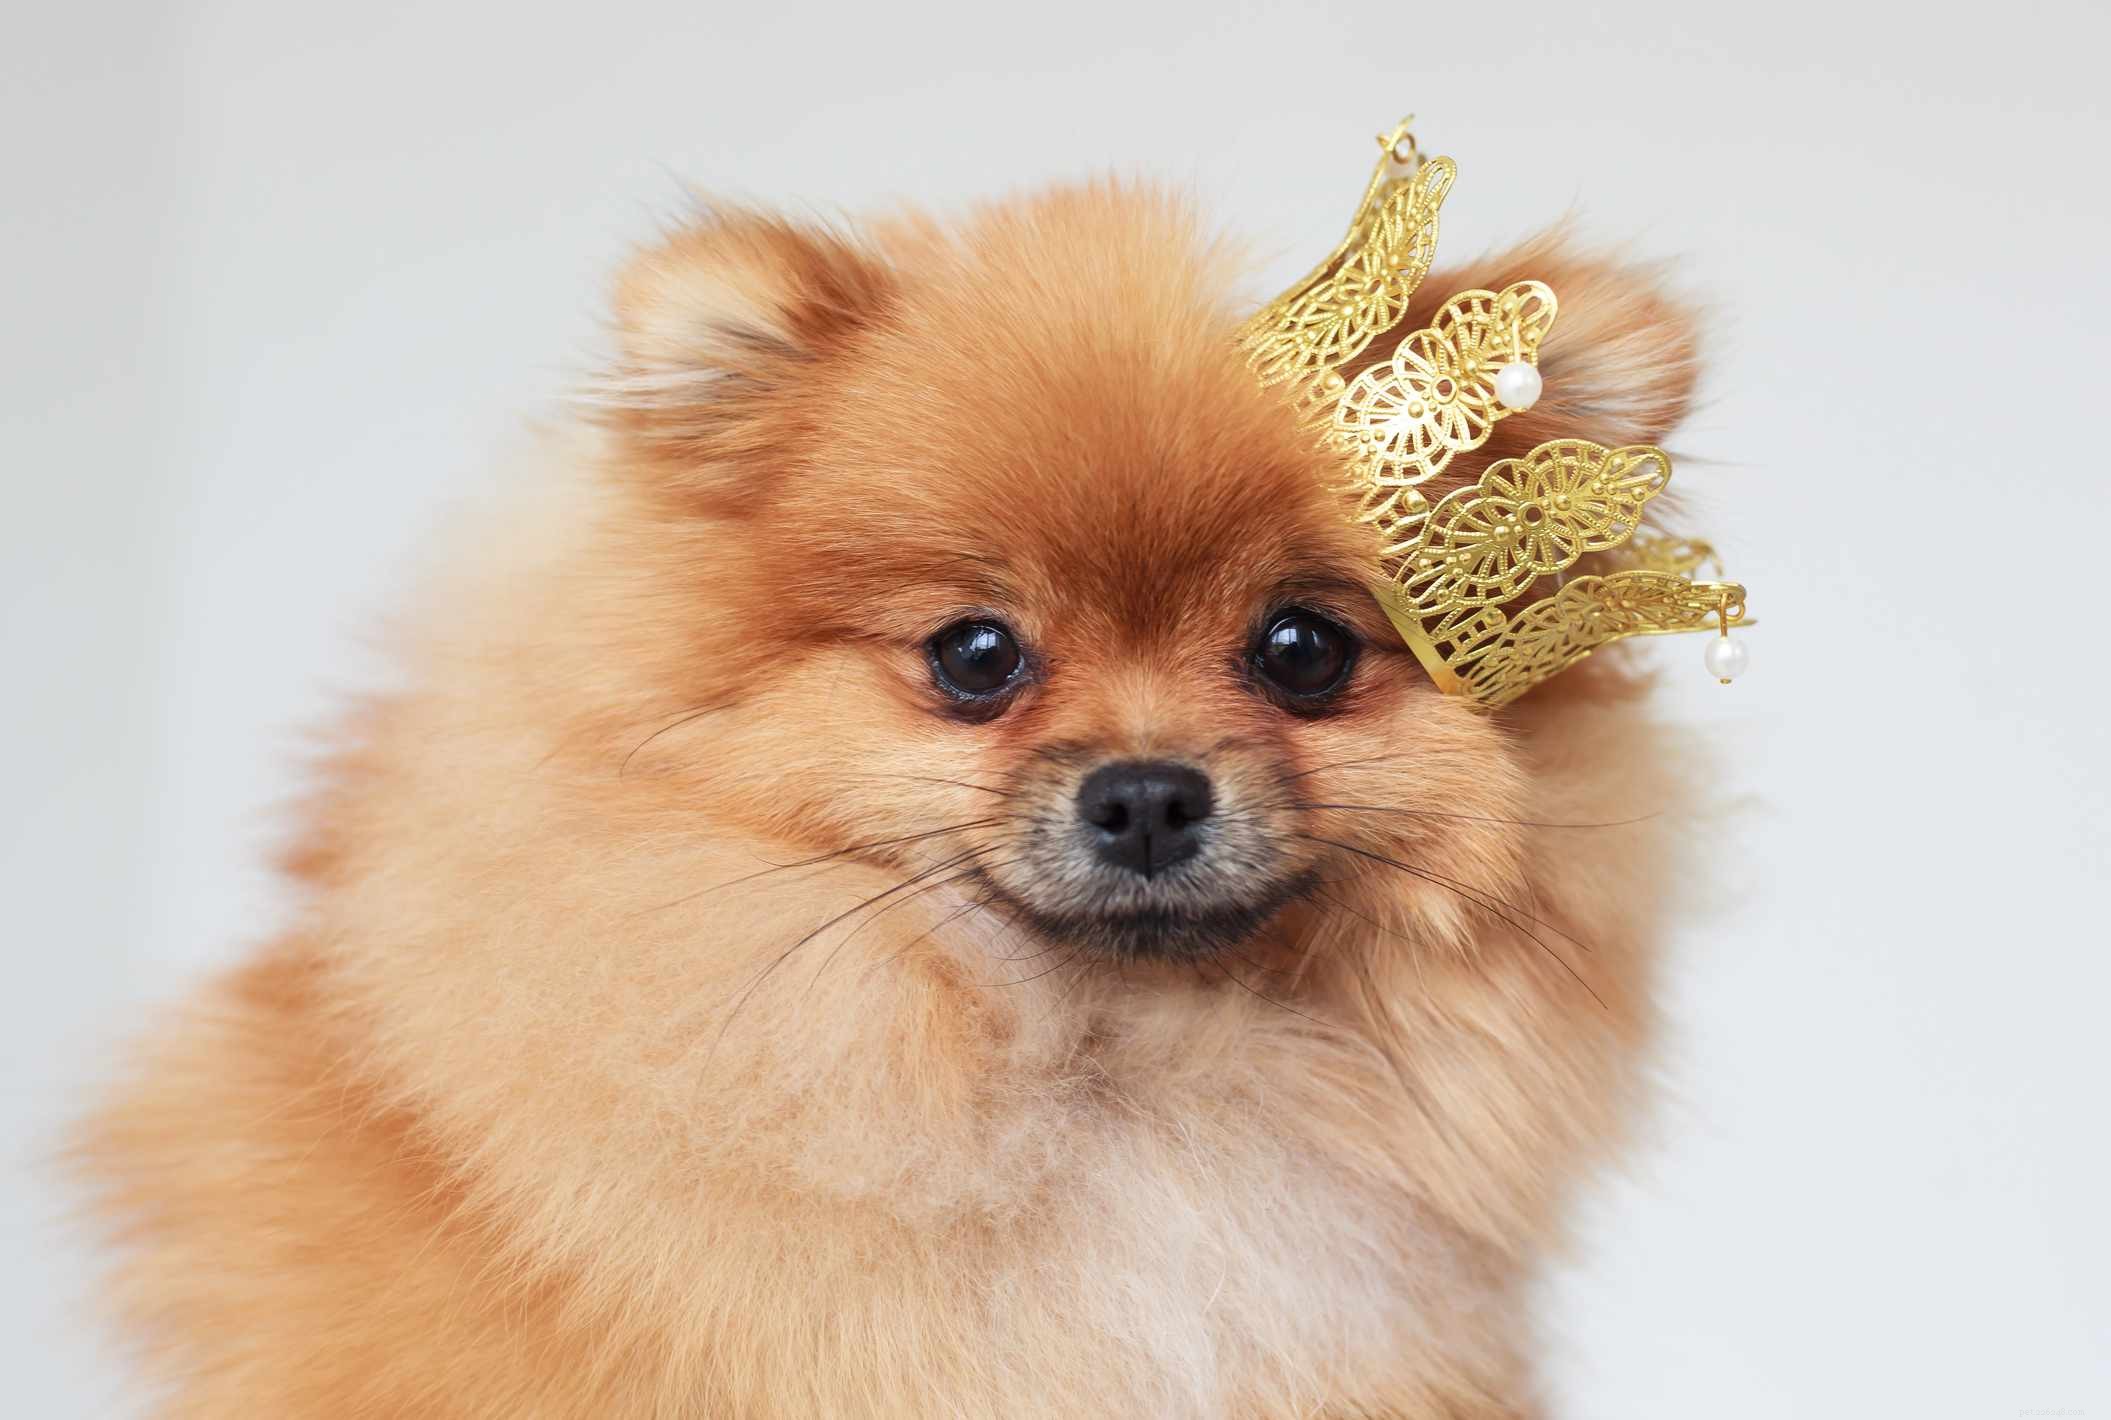 15 лучших королевских имен для собак